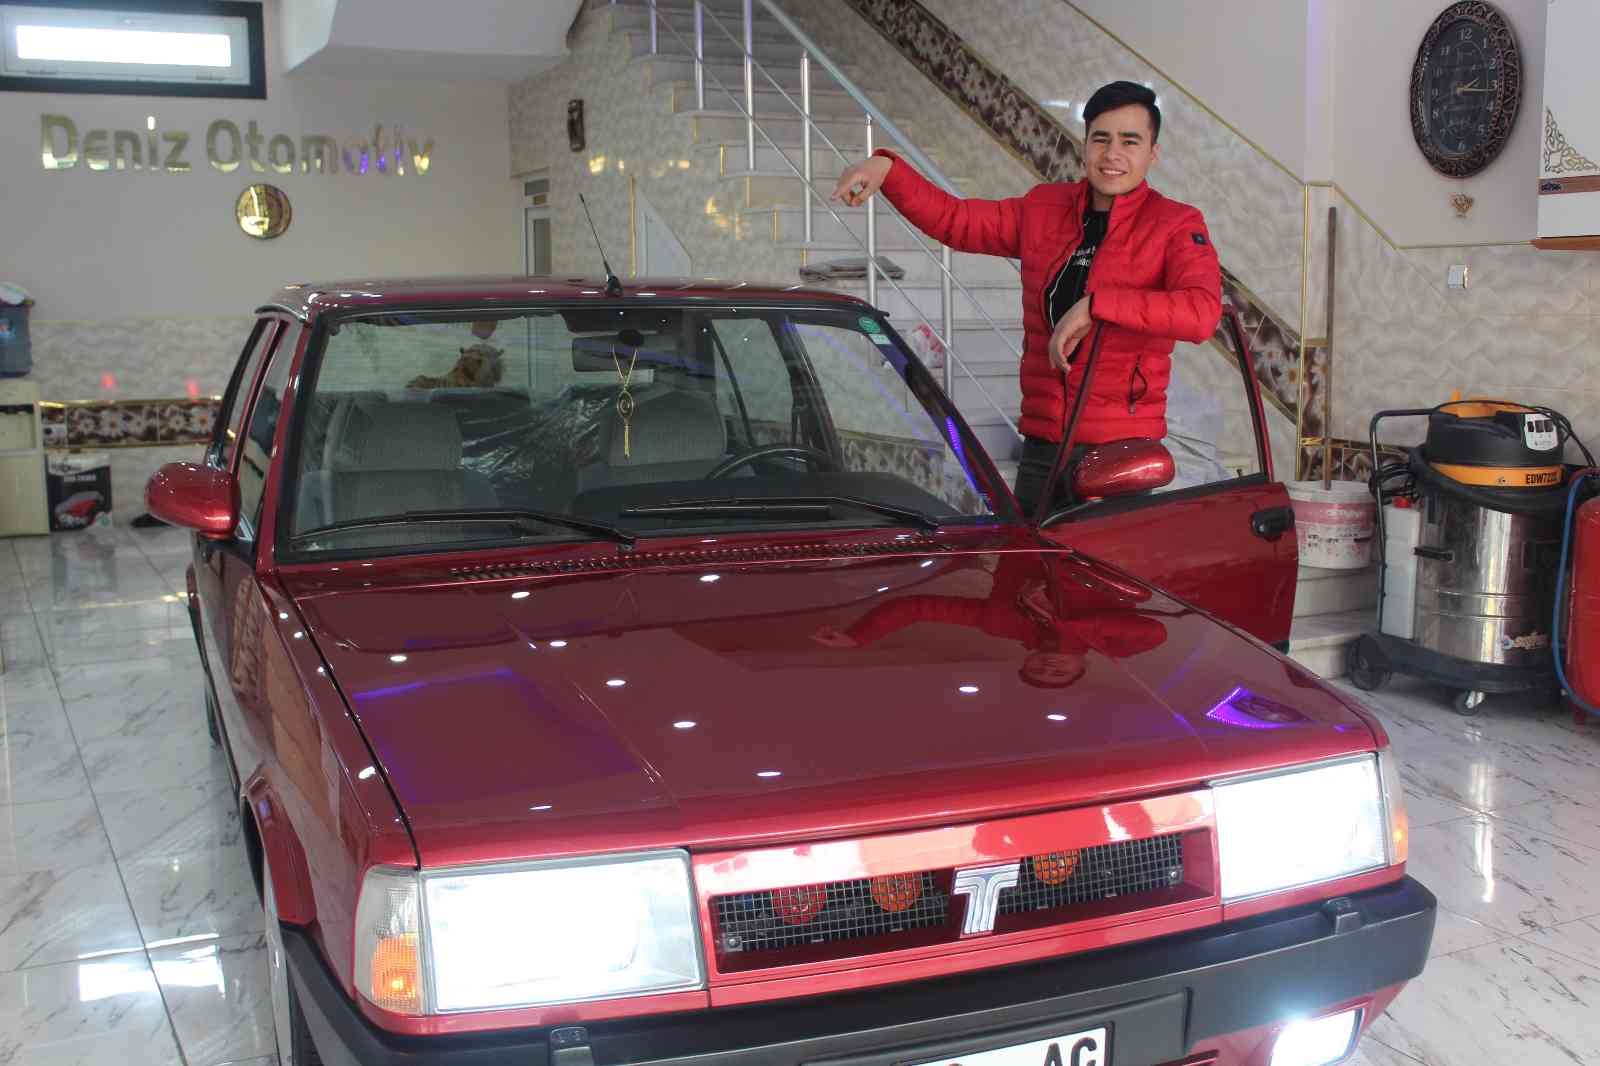 20 yıllık araba 165 bin liradan satışa çıktı #gaziantep